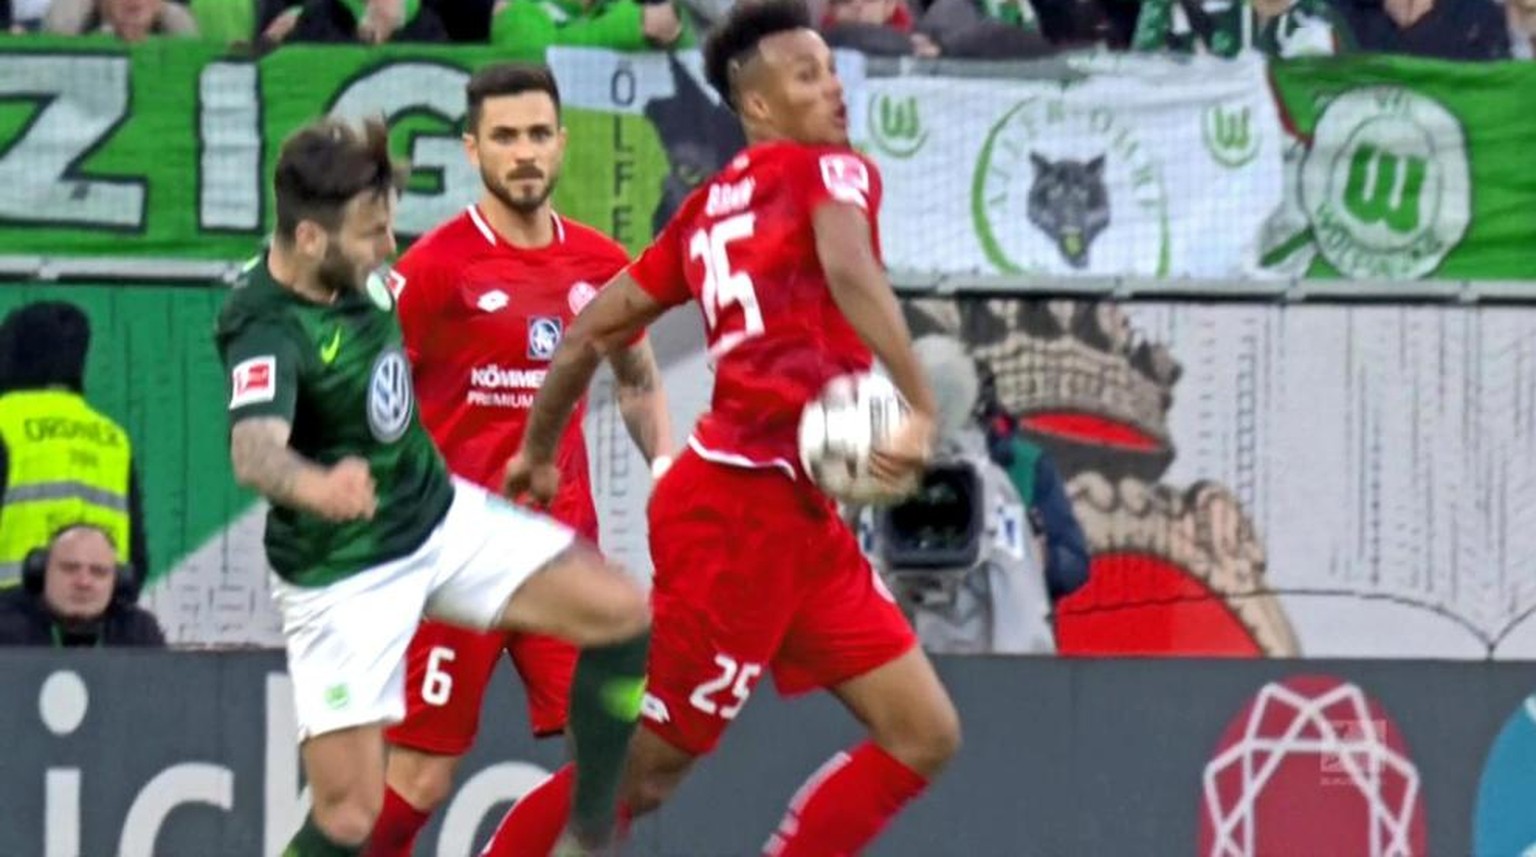 Handspiel oder nicht? Wolfsburgs Steffen will aufs Tor schiessen, doch Gbamin stellt sich dazwischen.